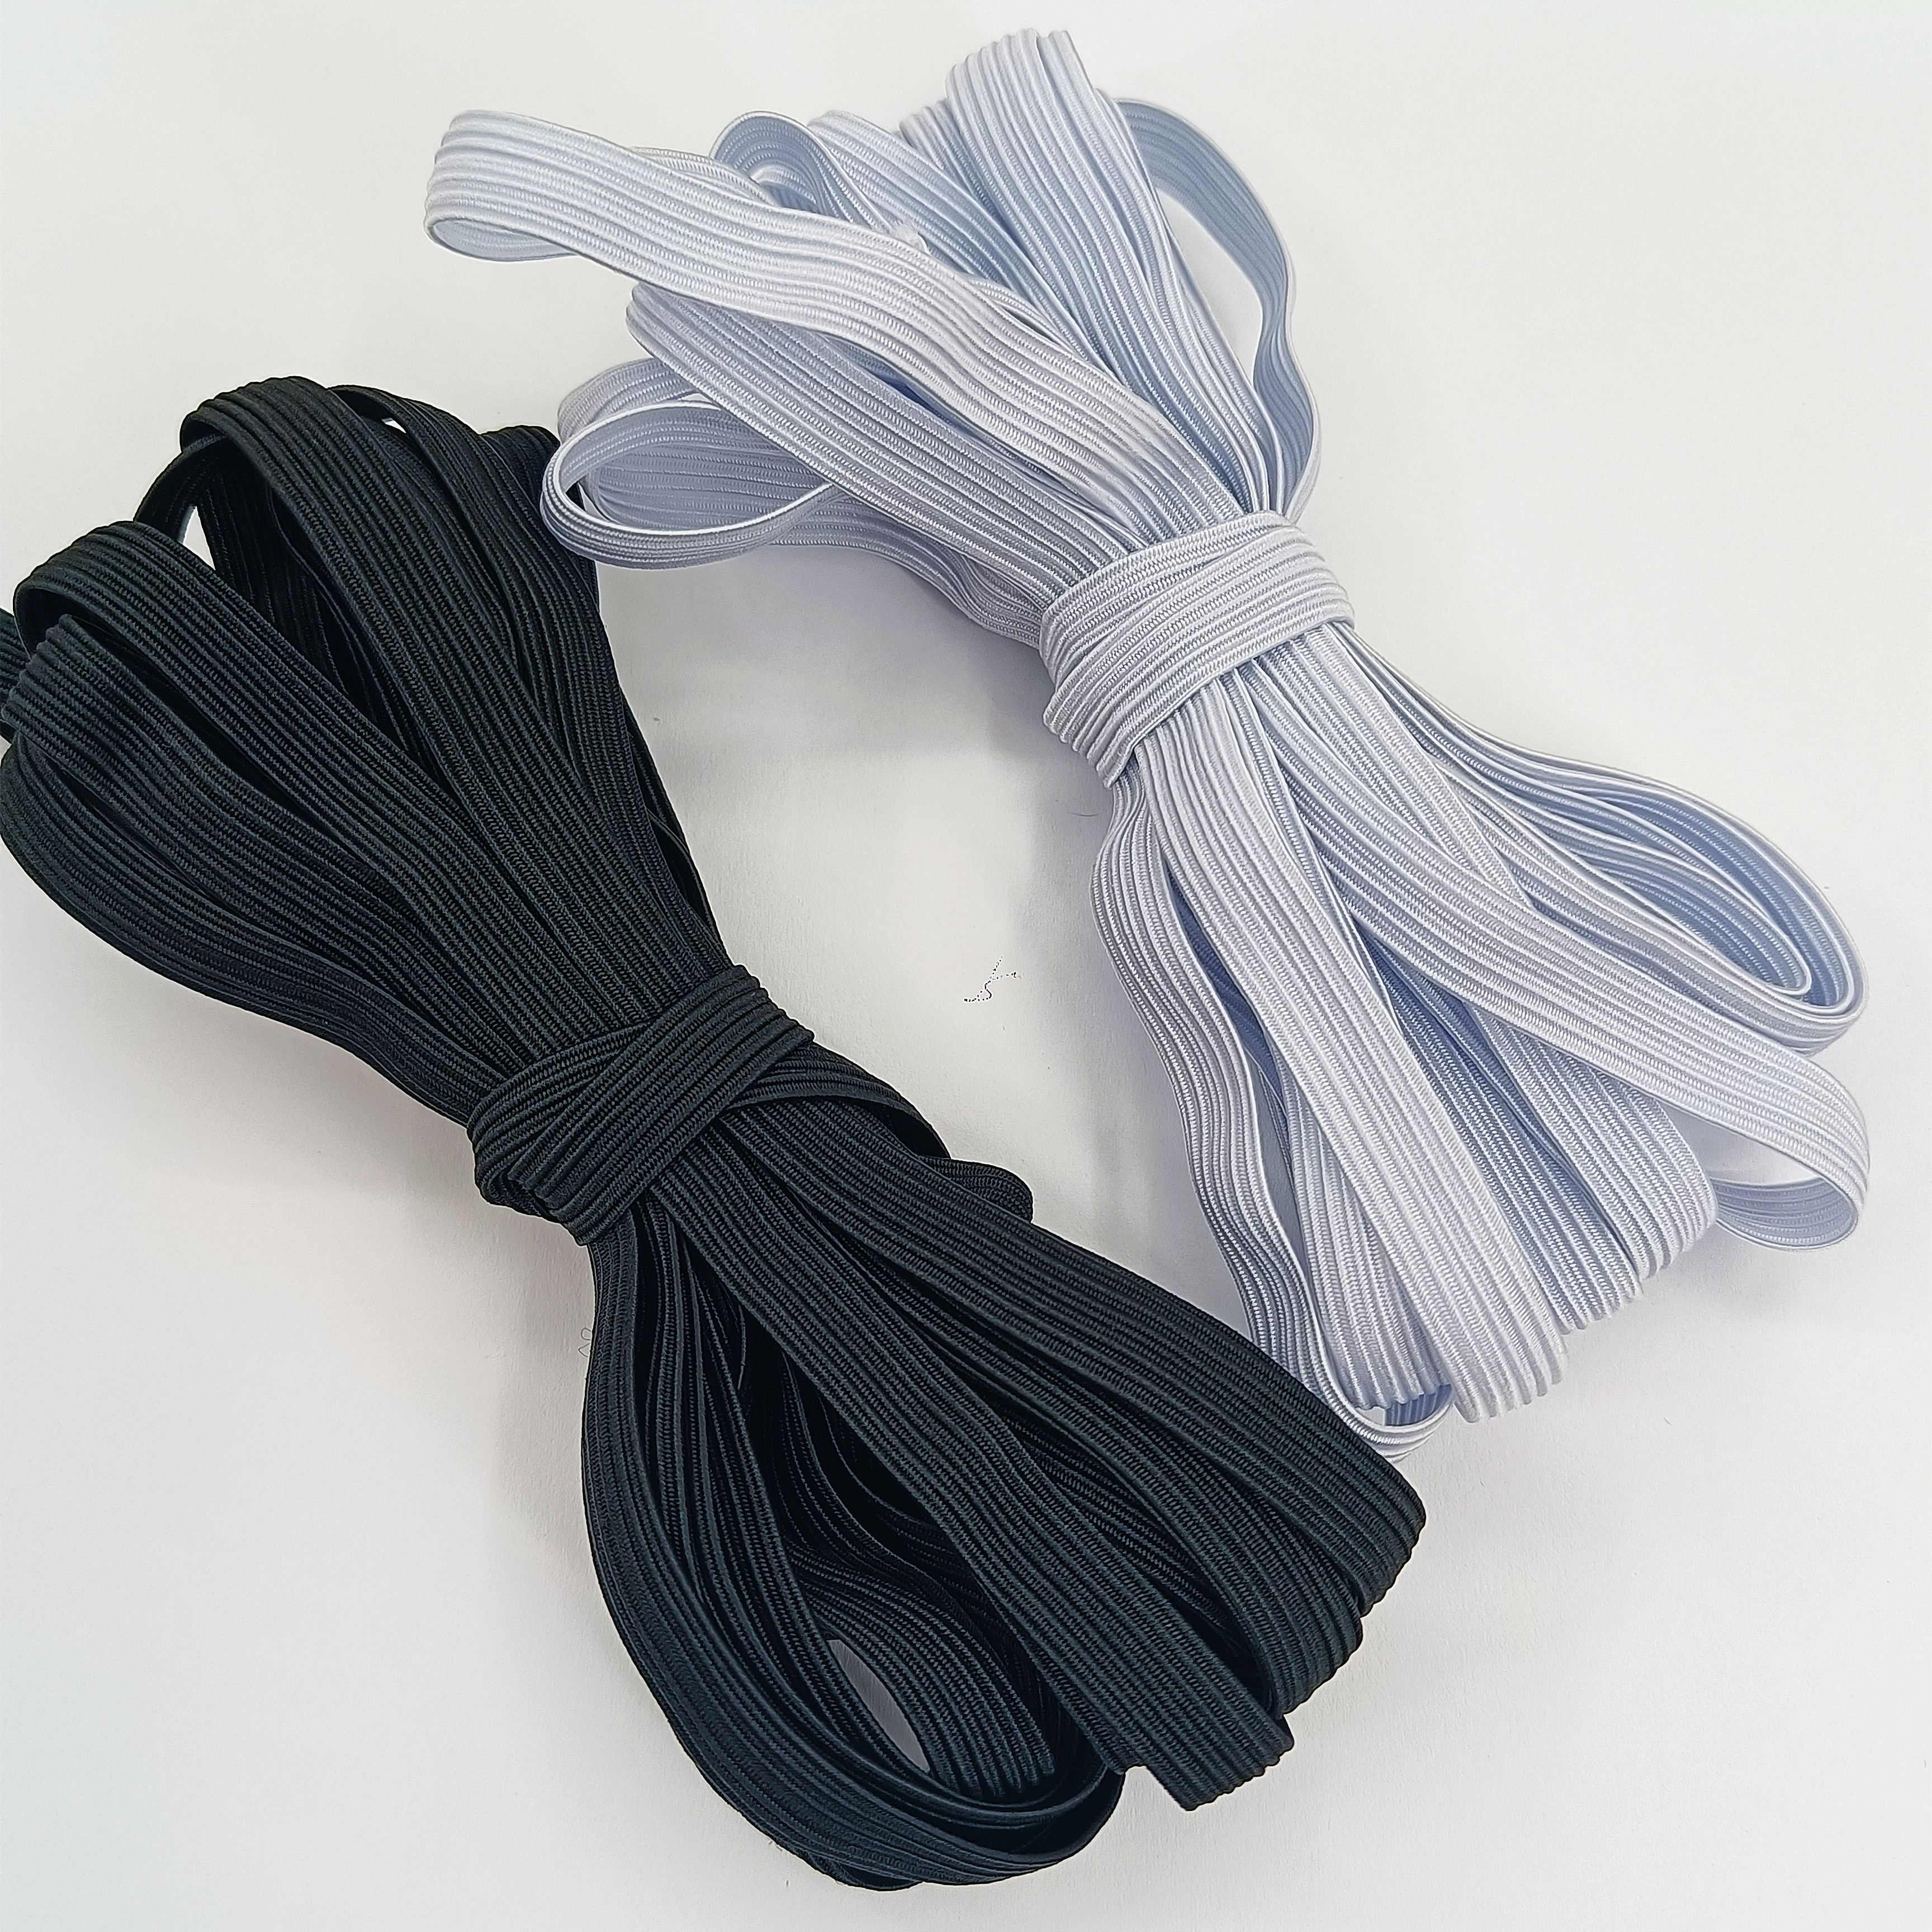 Dilwe Corde élastique (Noir)3 Sacs De 06cm 10m Cordes Elastiques Plates  Pour Couture De Vêtements quincaillerie corde Noir Blanc